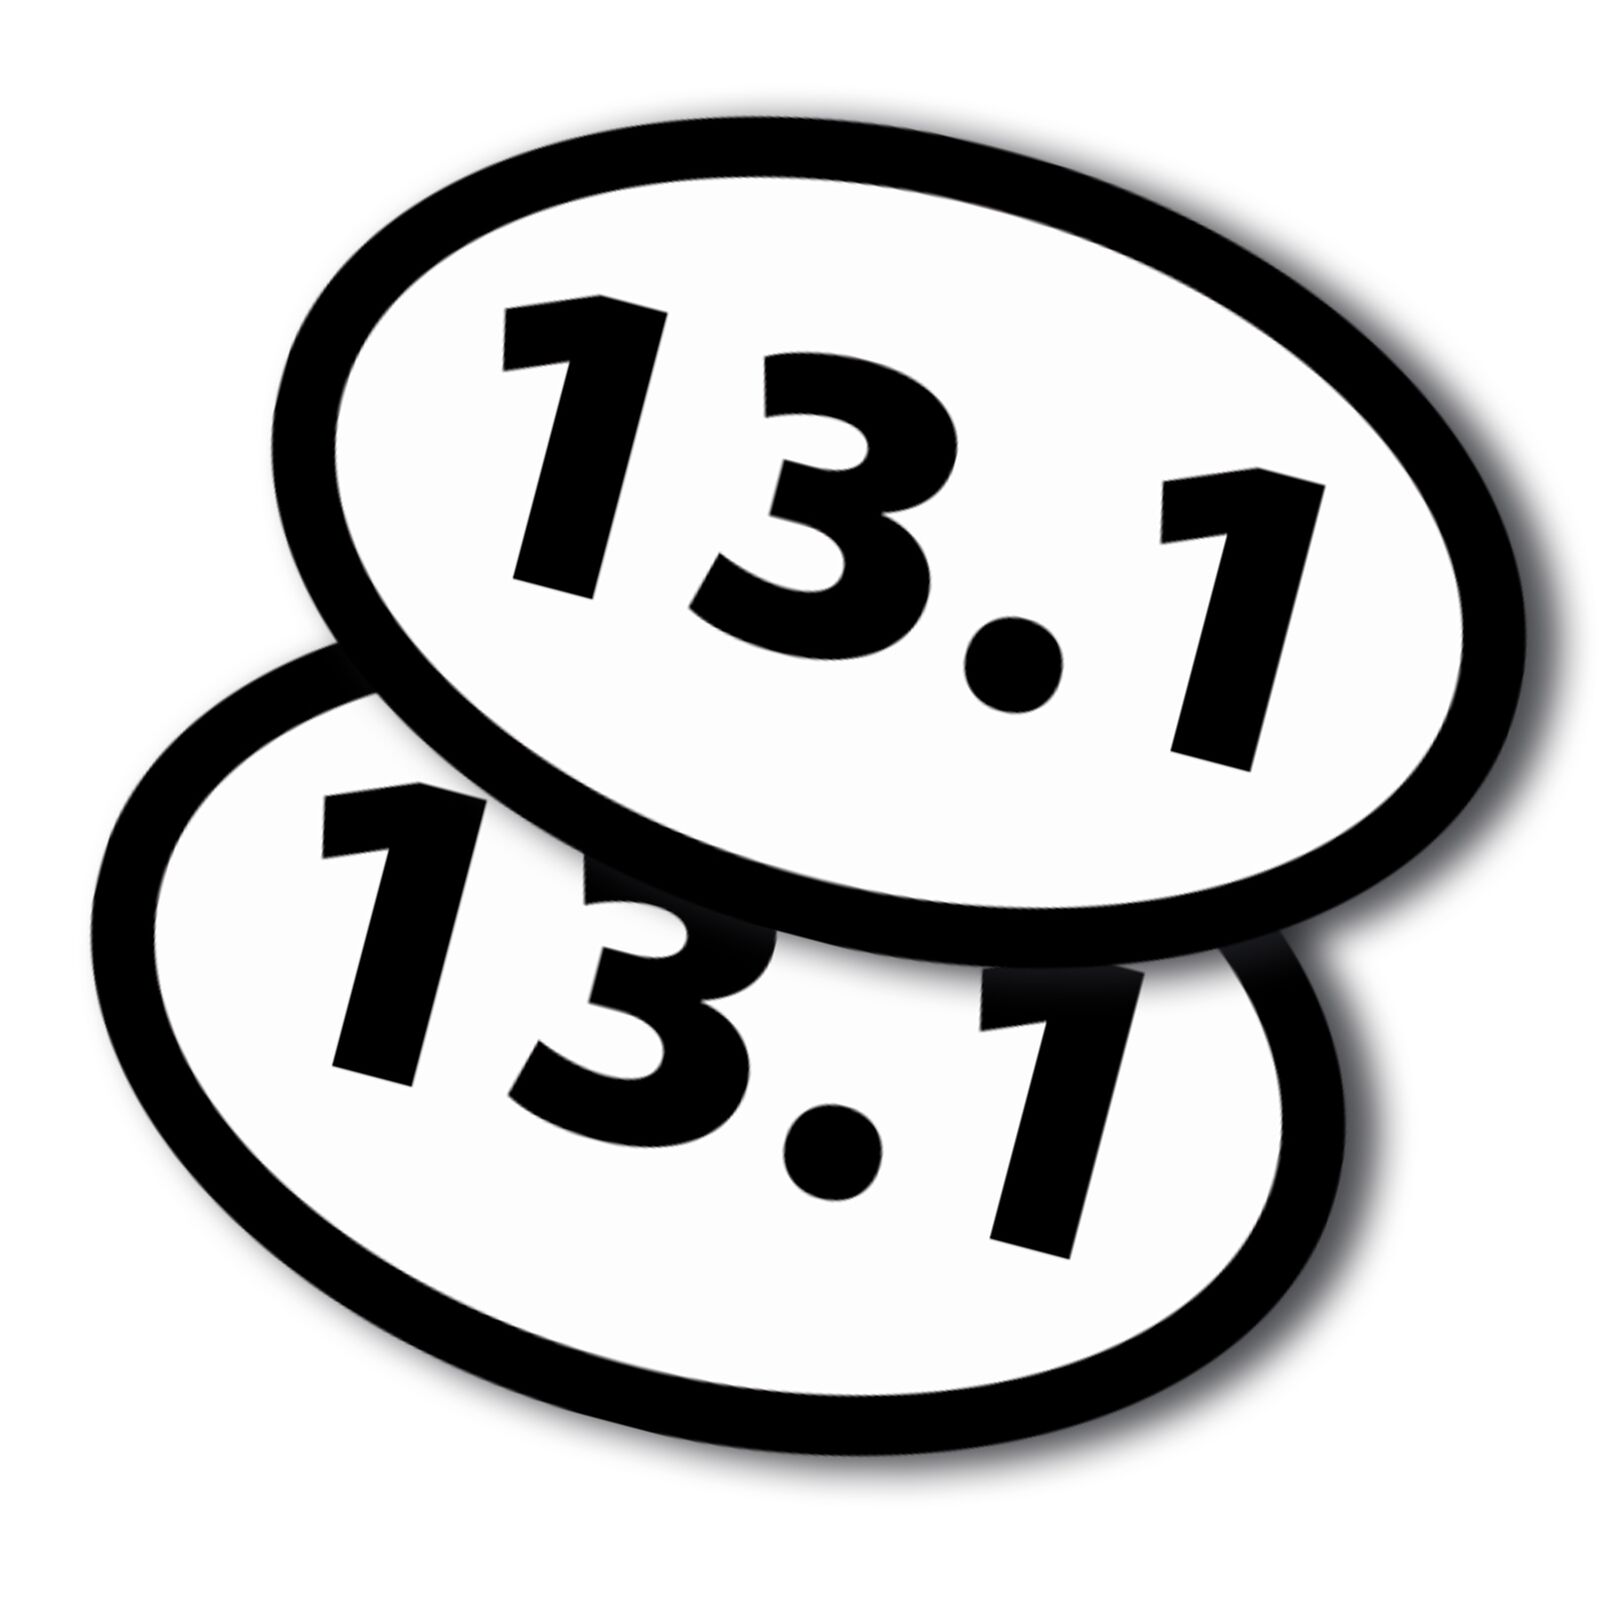 13.1 Half Marathon Oval Runner Adhesive Decal Sticker, 2 Pack, 5.5x3.5 Inch